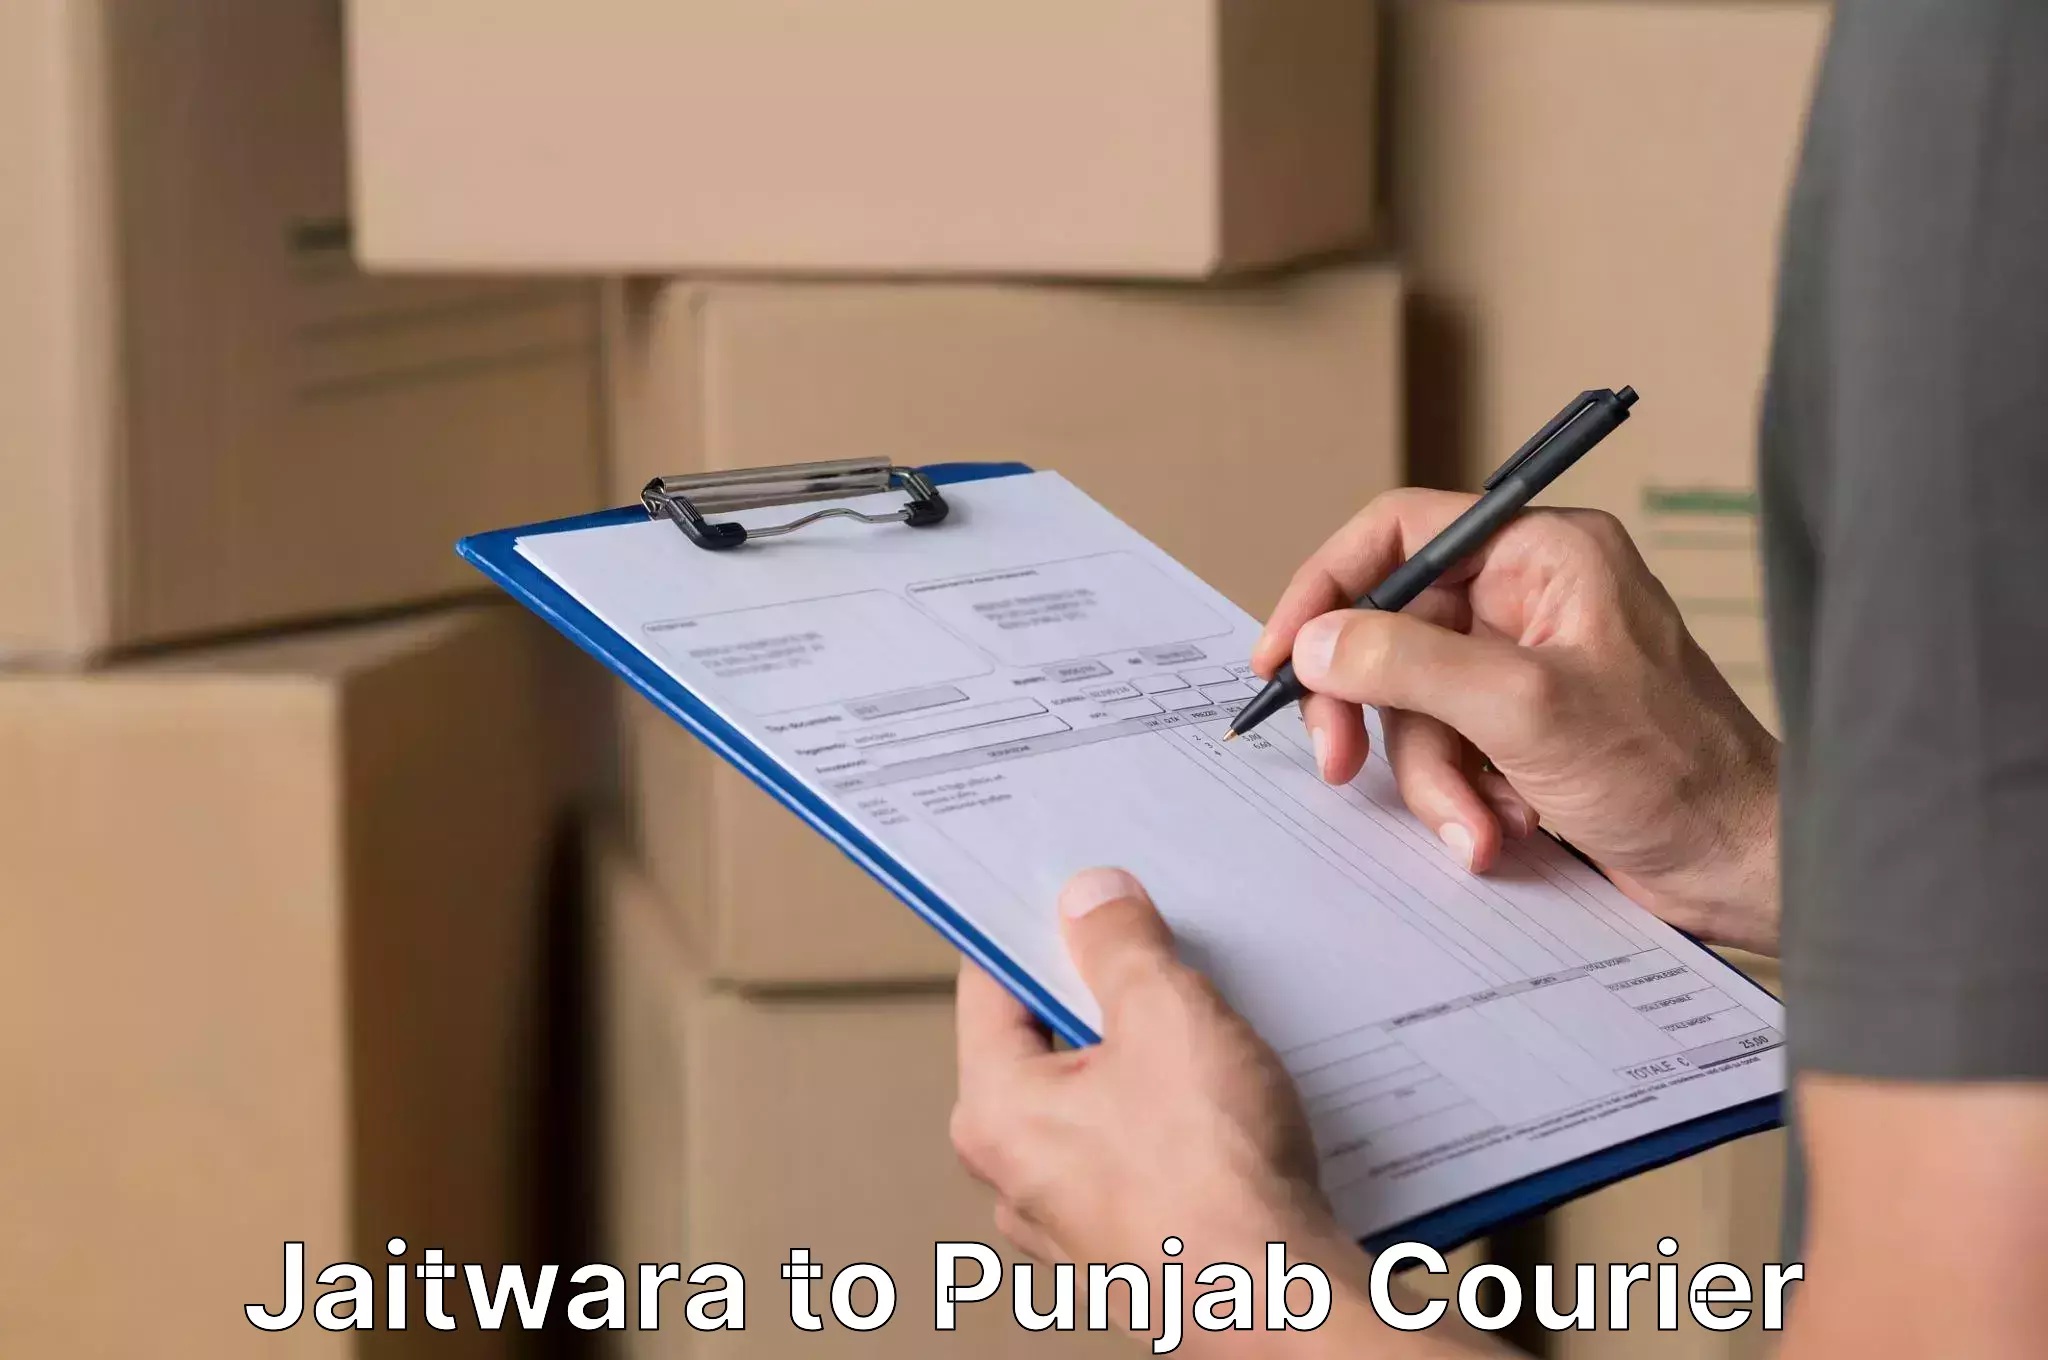 Home relocation experts Jaitwara to Punjab